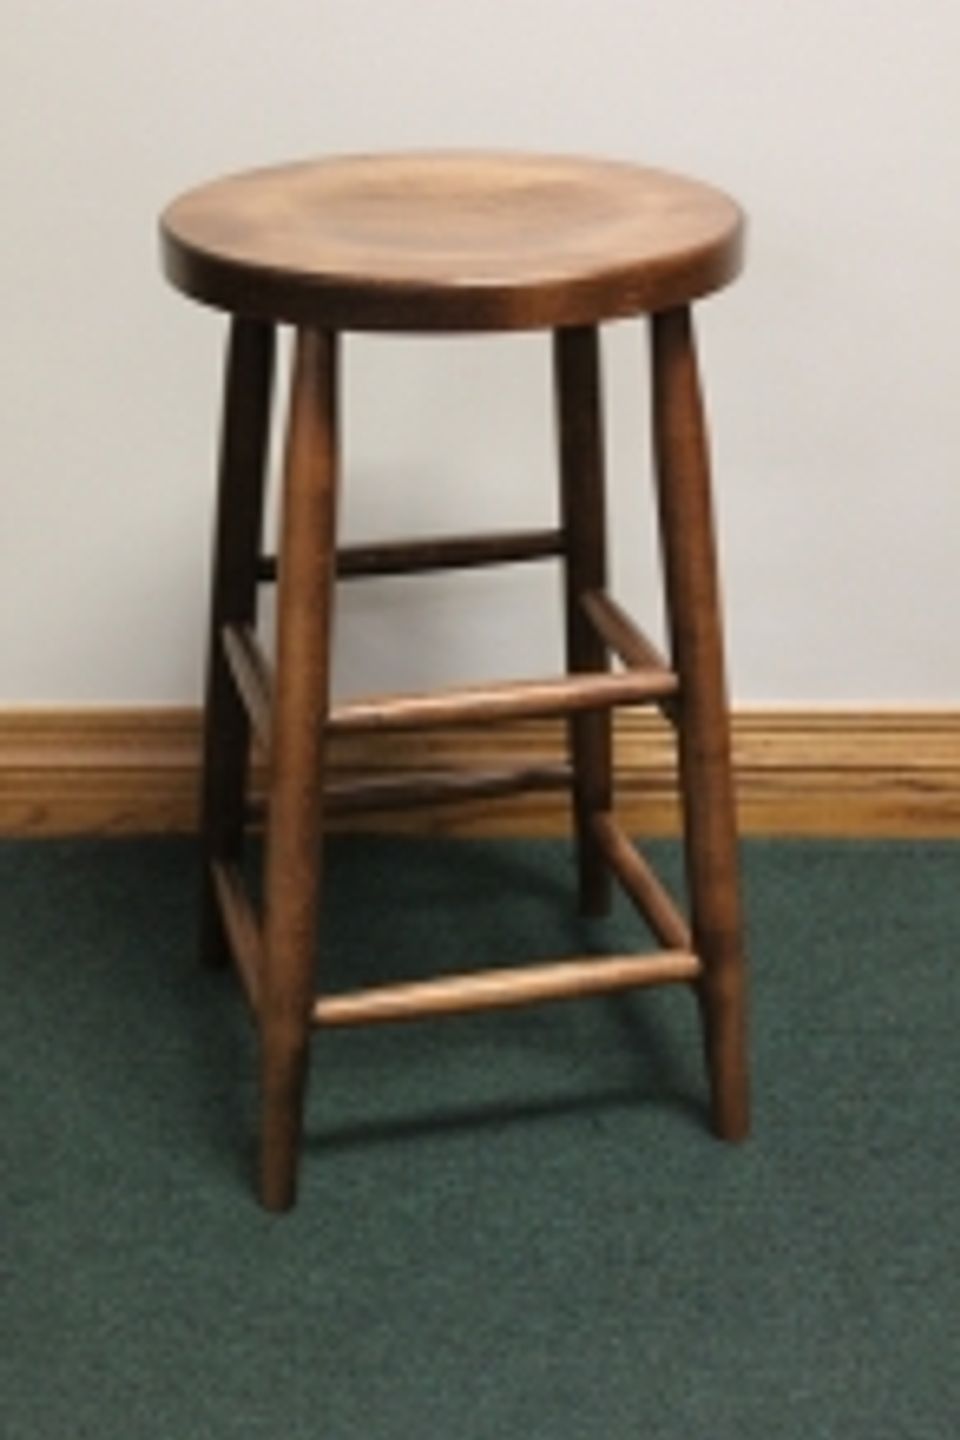 Pion. plain leg stool